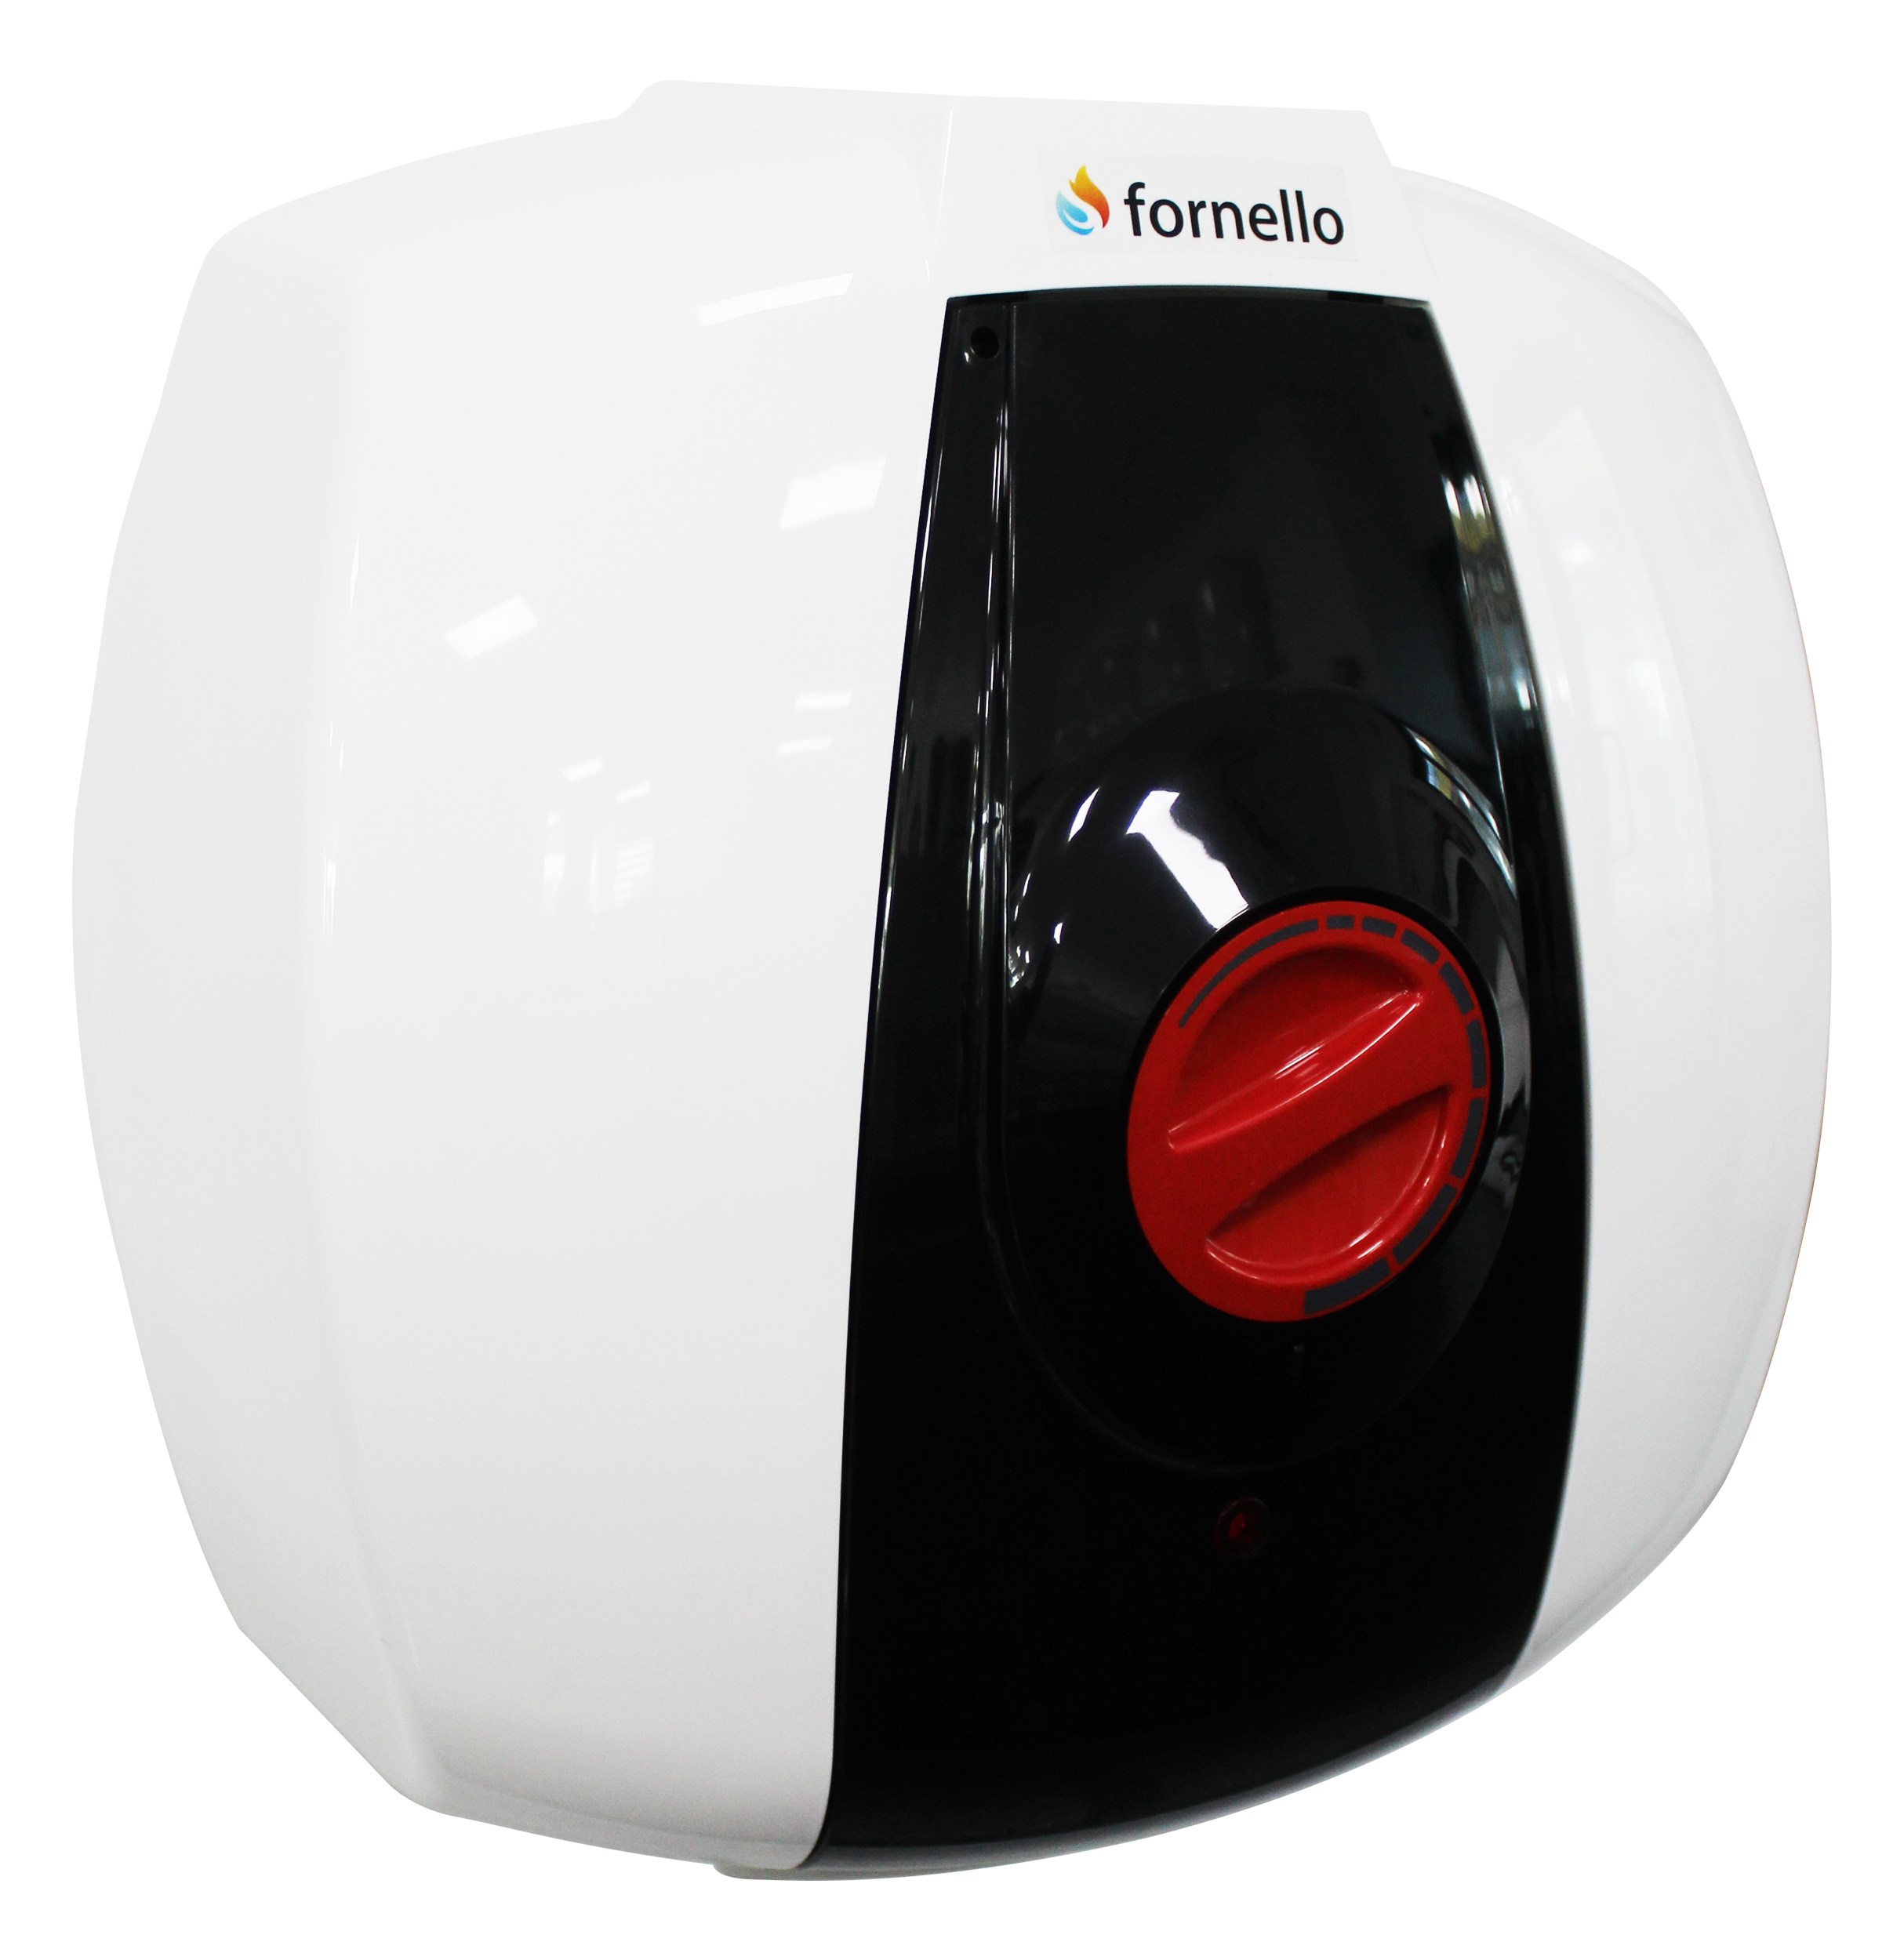 Boiler electric Fornello Optima GCA 1015 M54 RC, 1500 W, 10 l, 0.9 Mpa, Termostat reglabil, Montare deasupra chiuvetei, Alb Fornello imagine bricosteel.ro